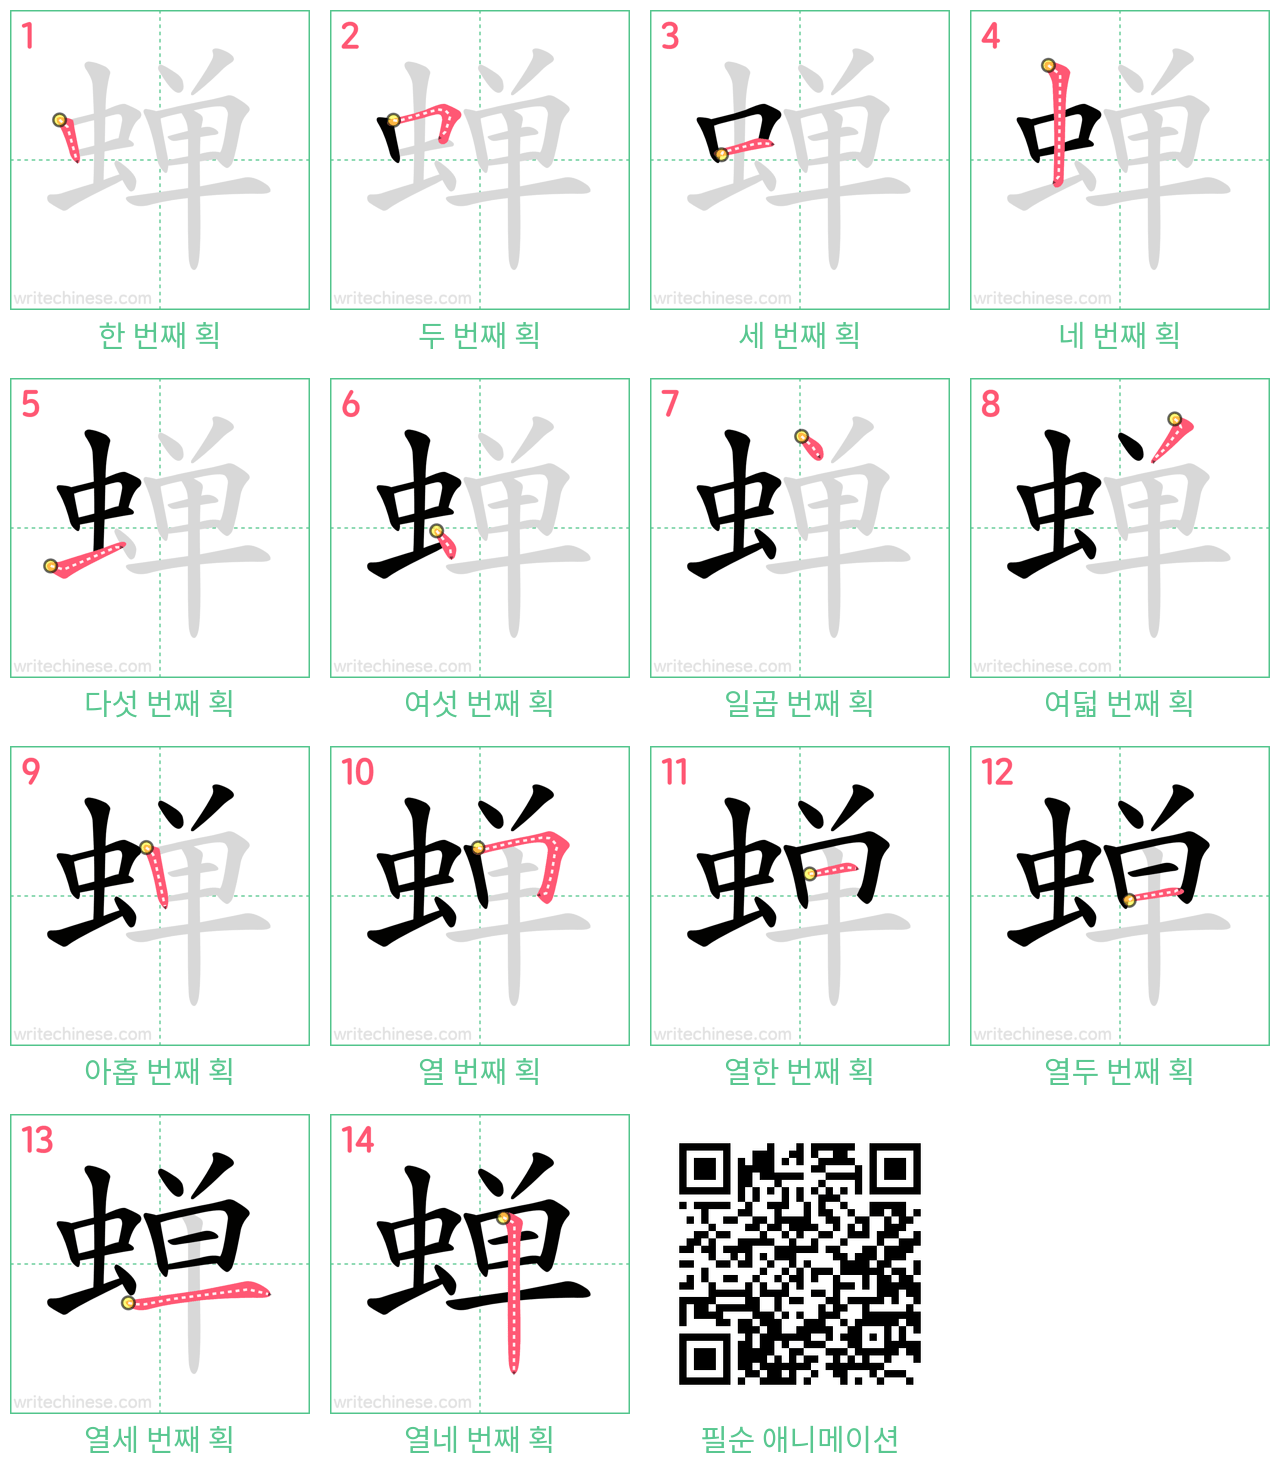 蝉 step-by-step stroke order diagrams